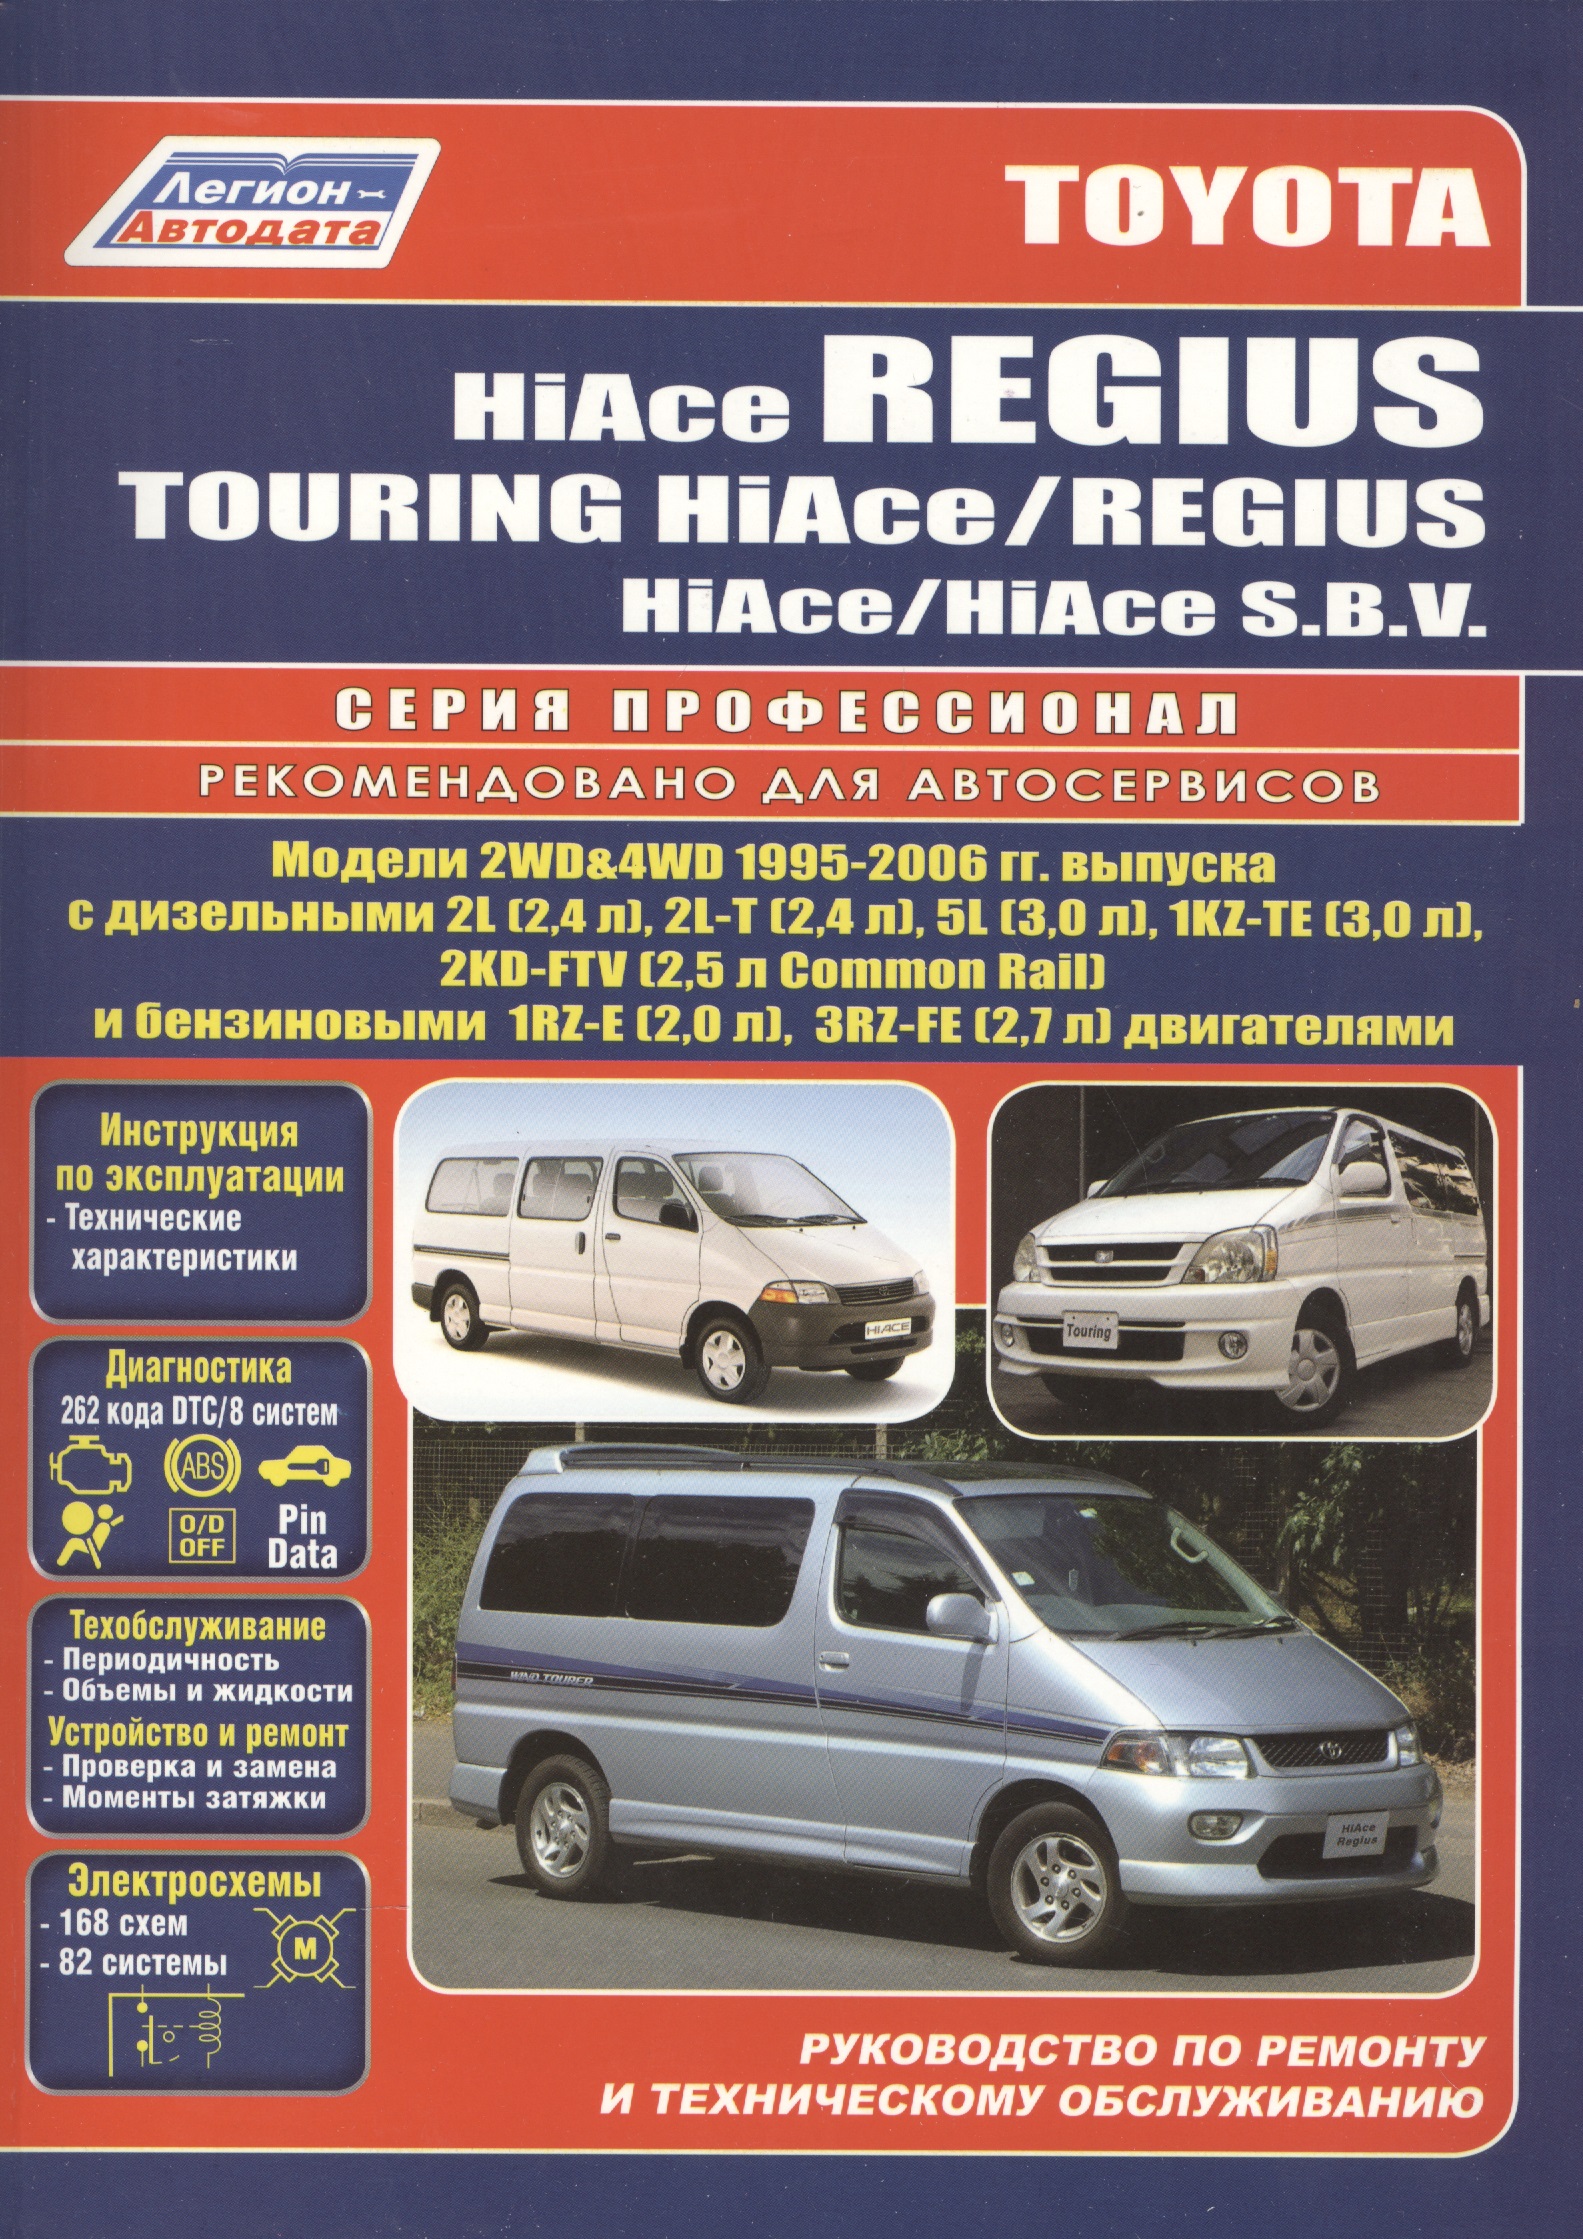 Toyota HiAce / Regius / HiAce SBV. Модели 2WD&4WD 1995-2006 гг. выпуска с дизельными 2L (2,4 л.), 2L-T (2,4 л.)… Руководство по ремонту и техническому обслуживанию автомобилей.